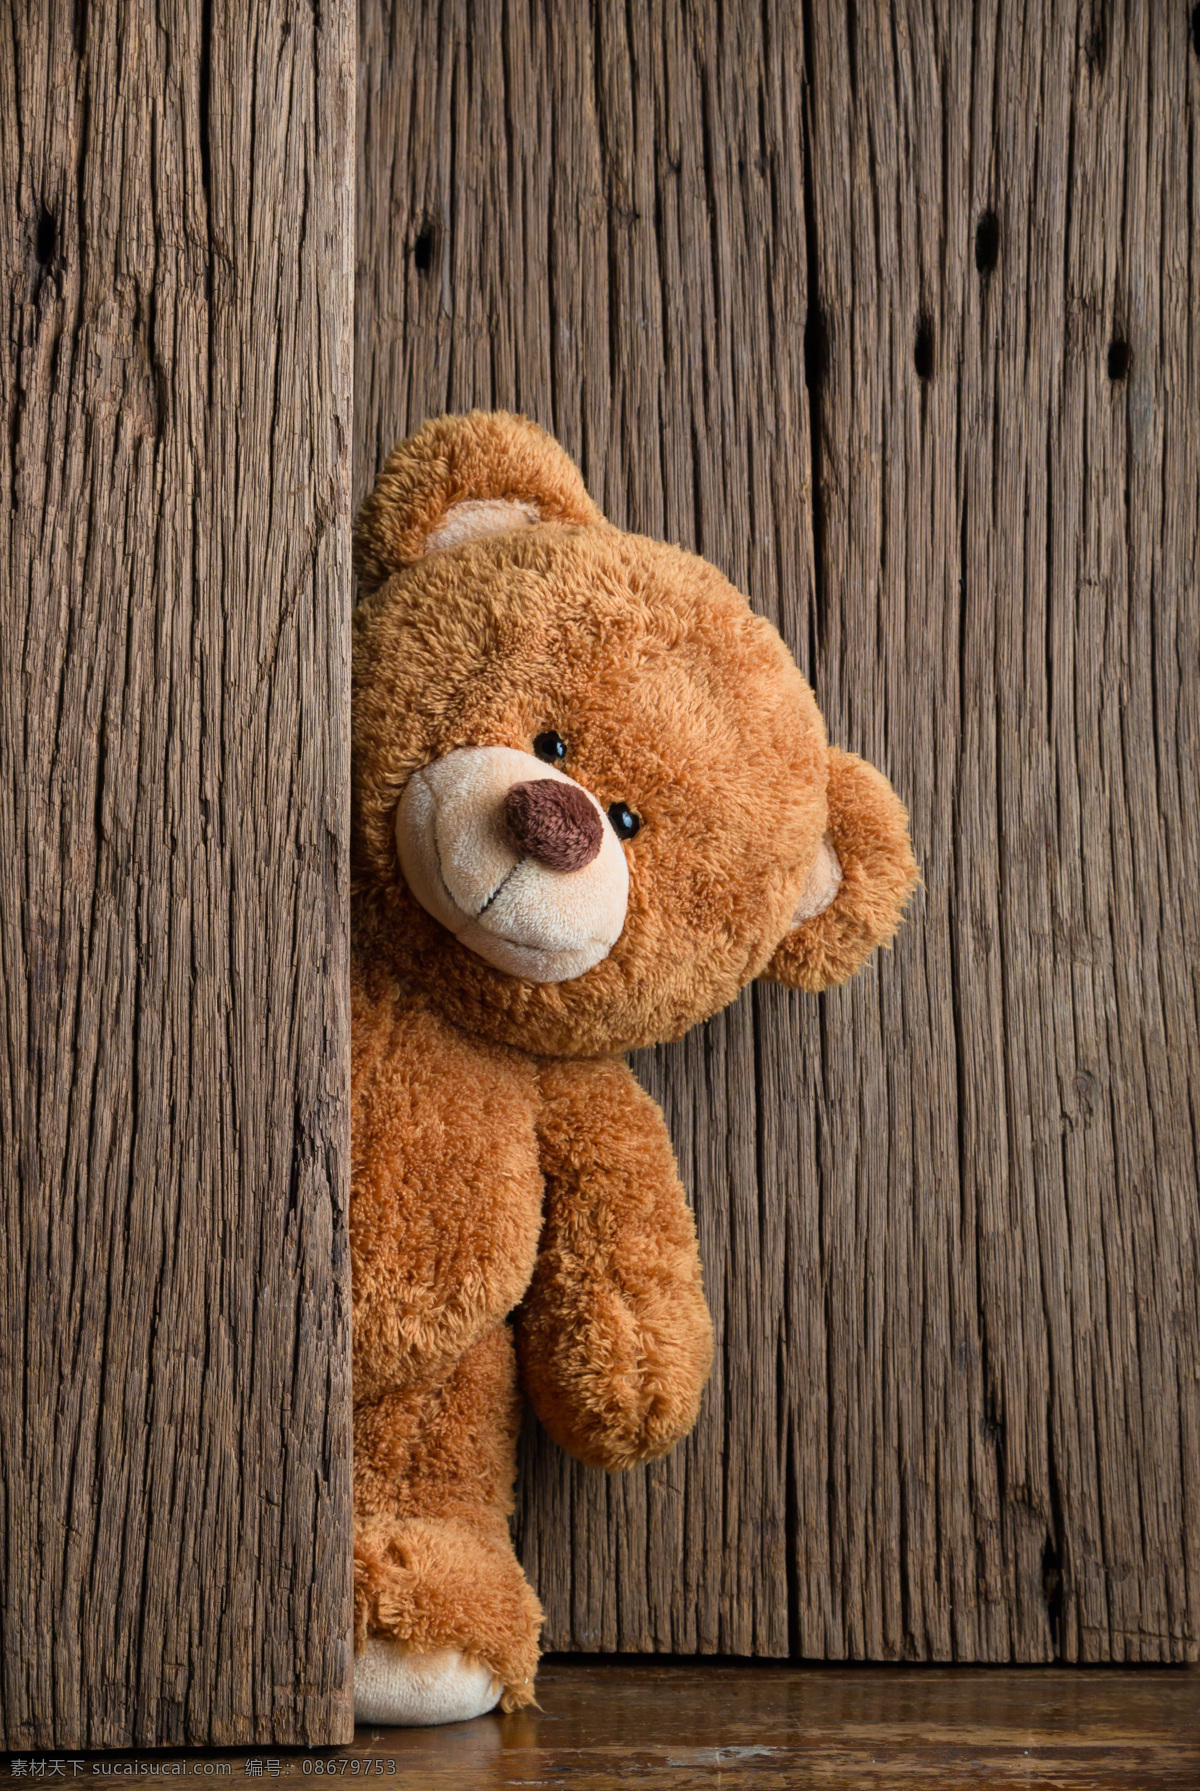 泰迪熊玩具 泰迪熊 玩具 熊 熊宝宝 玩具熊 可爱 毛茸茸